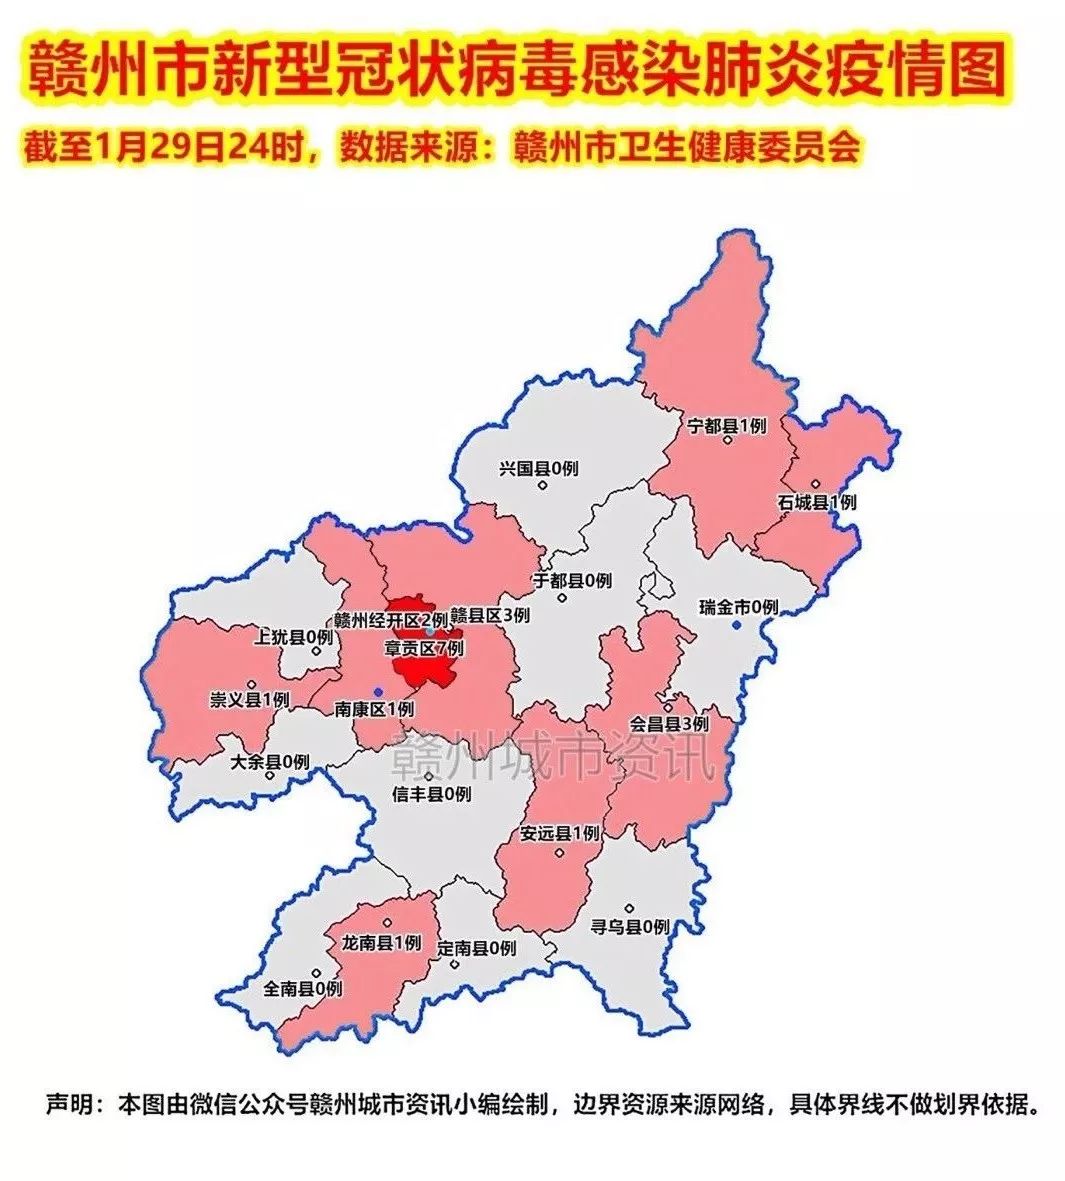 信丰县小河镇地图图片